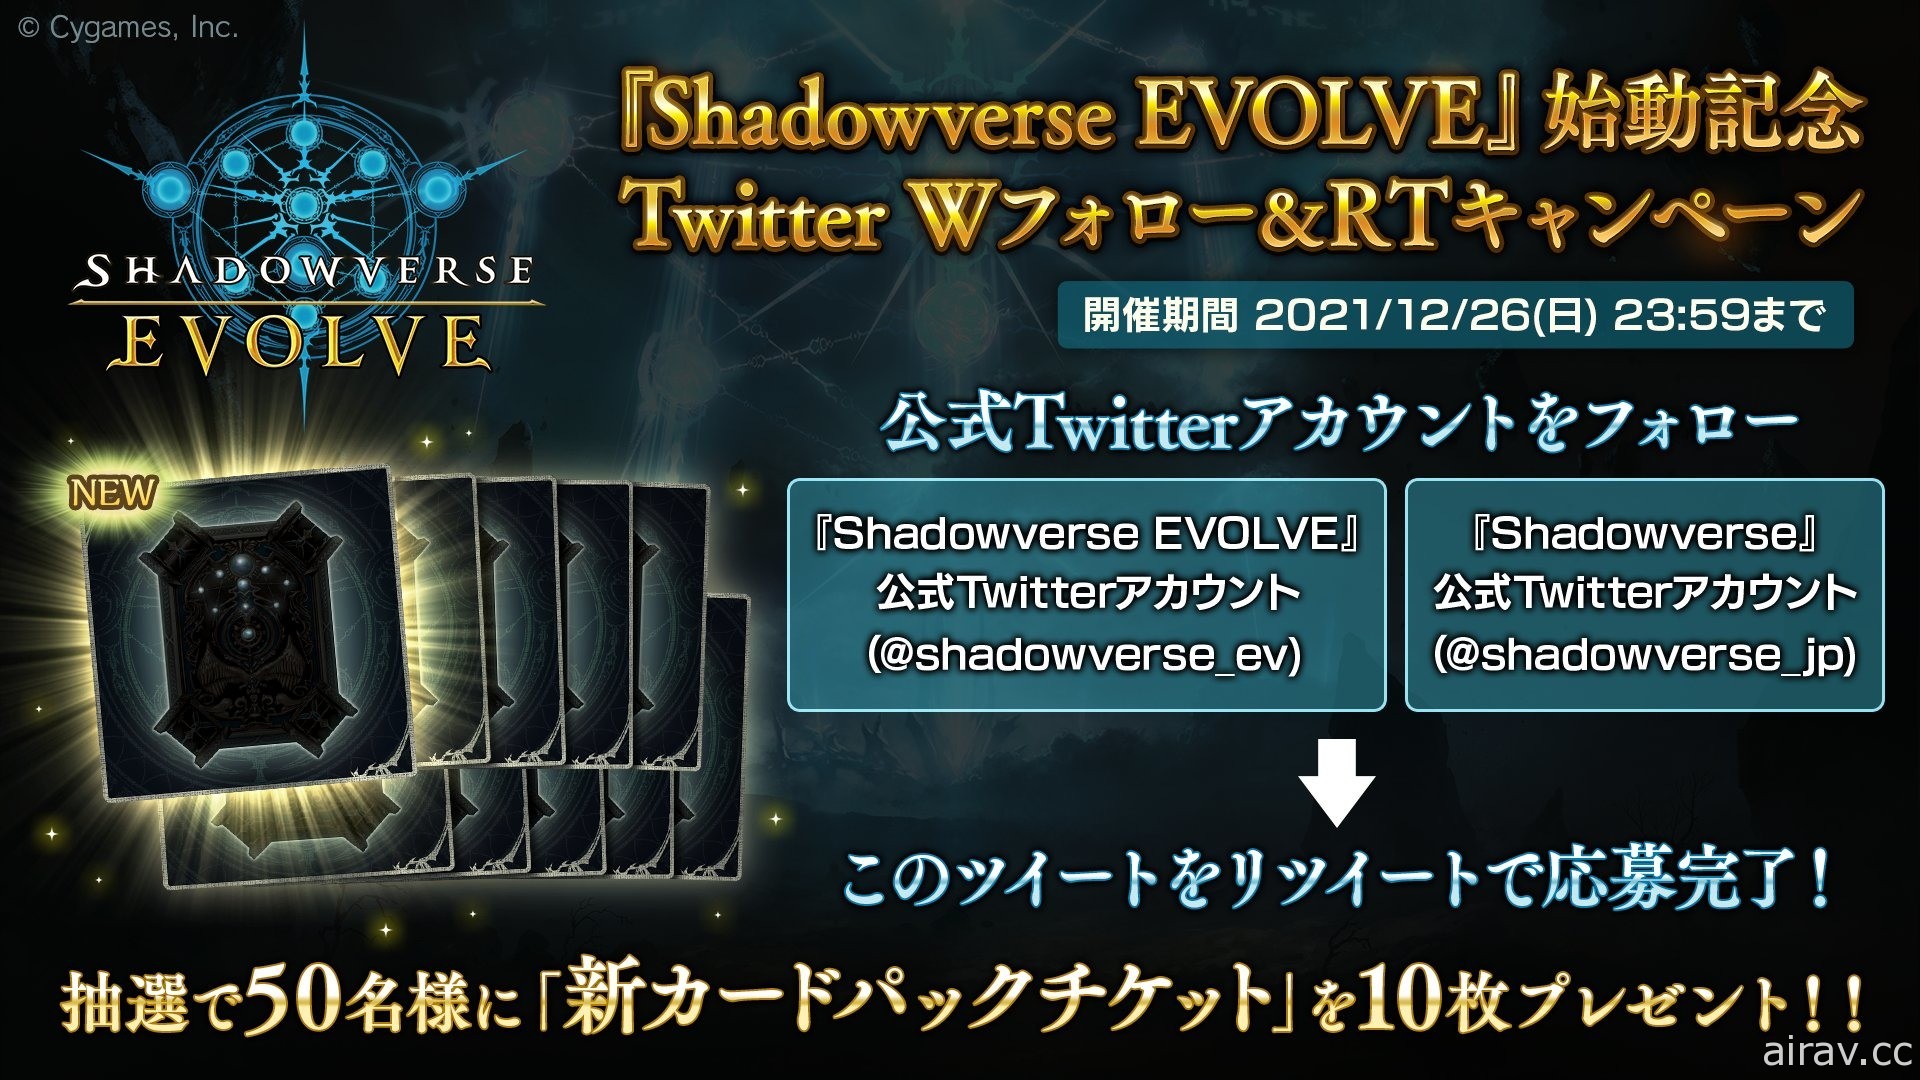 《闇影詩章》實體卡片遊戲《Shadowverse EVOLVE》將於 2022 年發售